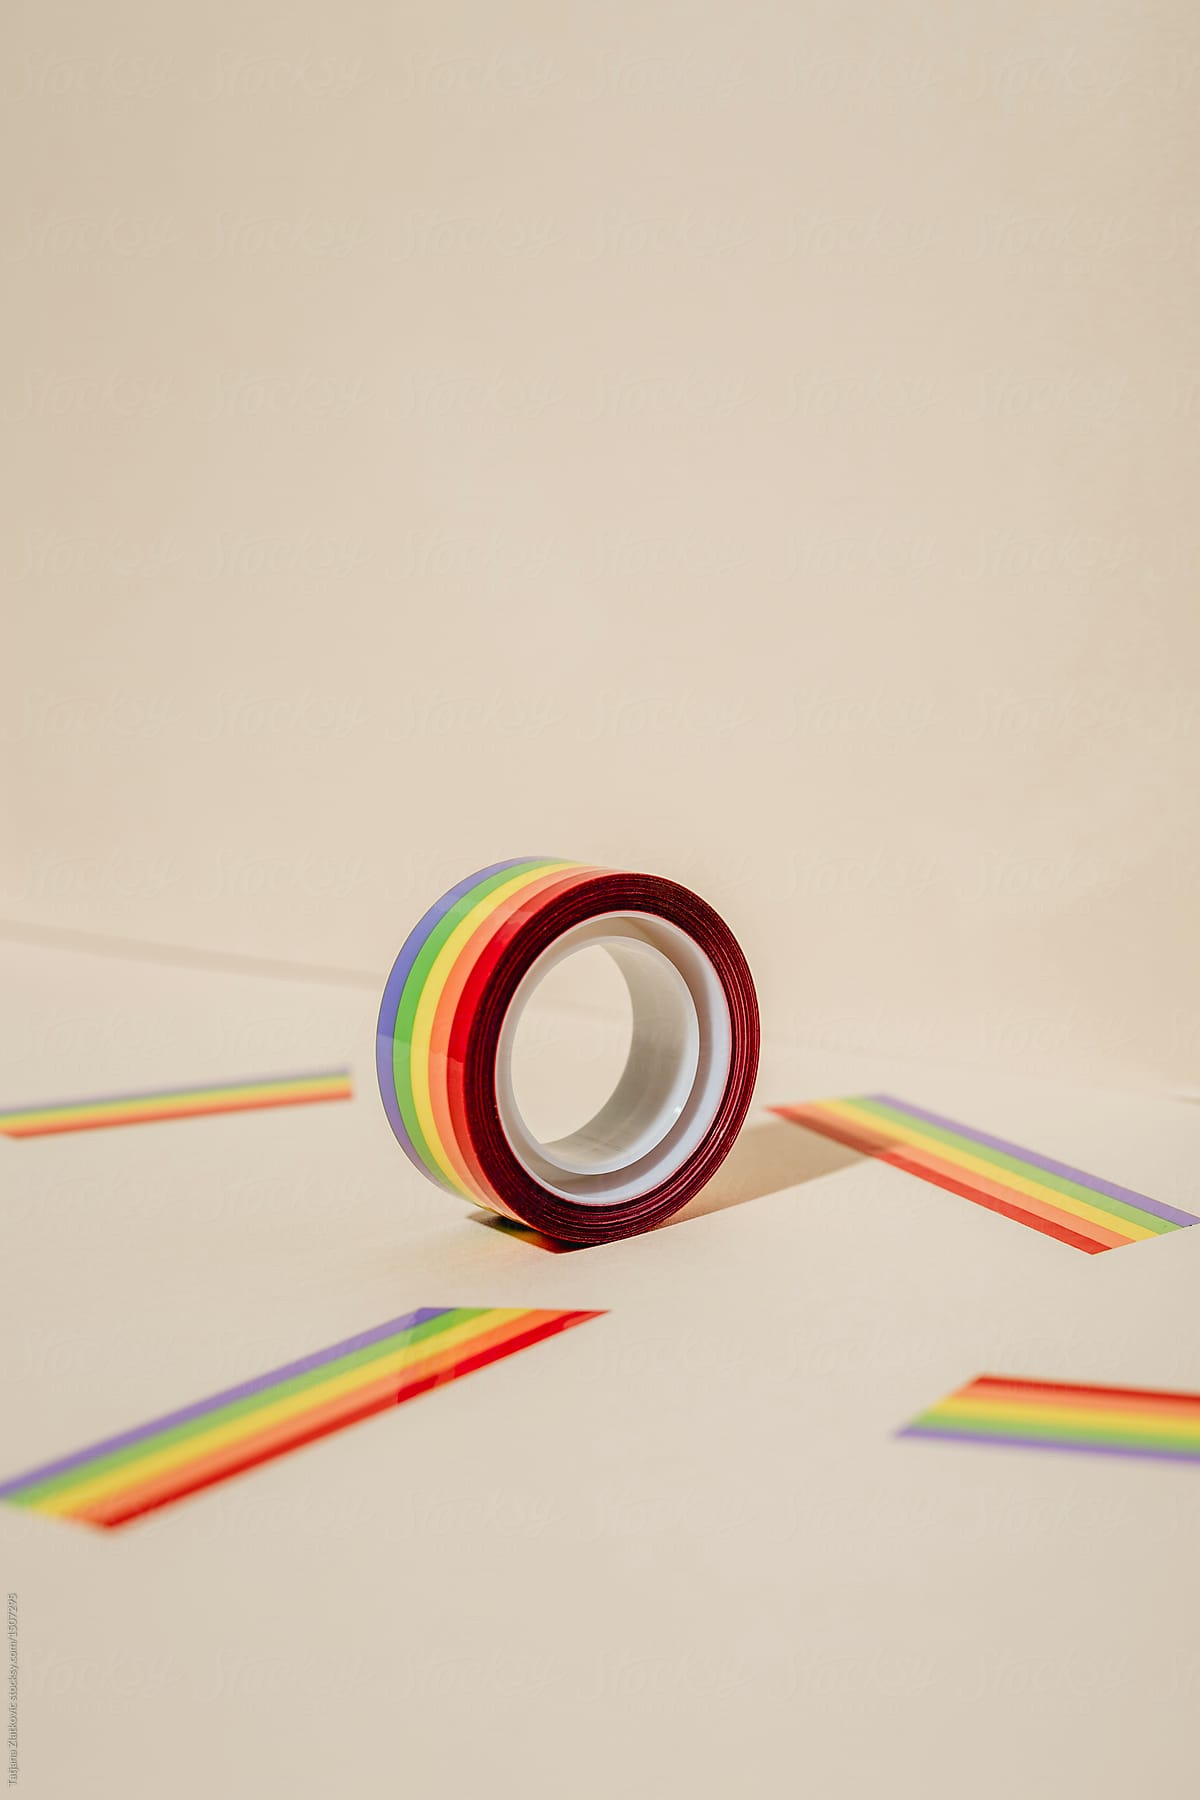 Rainbow Tape by Stocksy Contributor Tatjana Zlatkovic - Stocksy